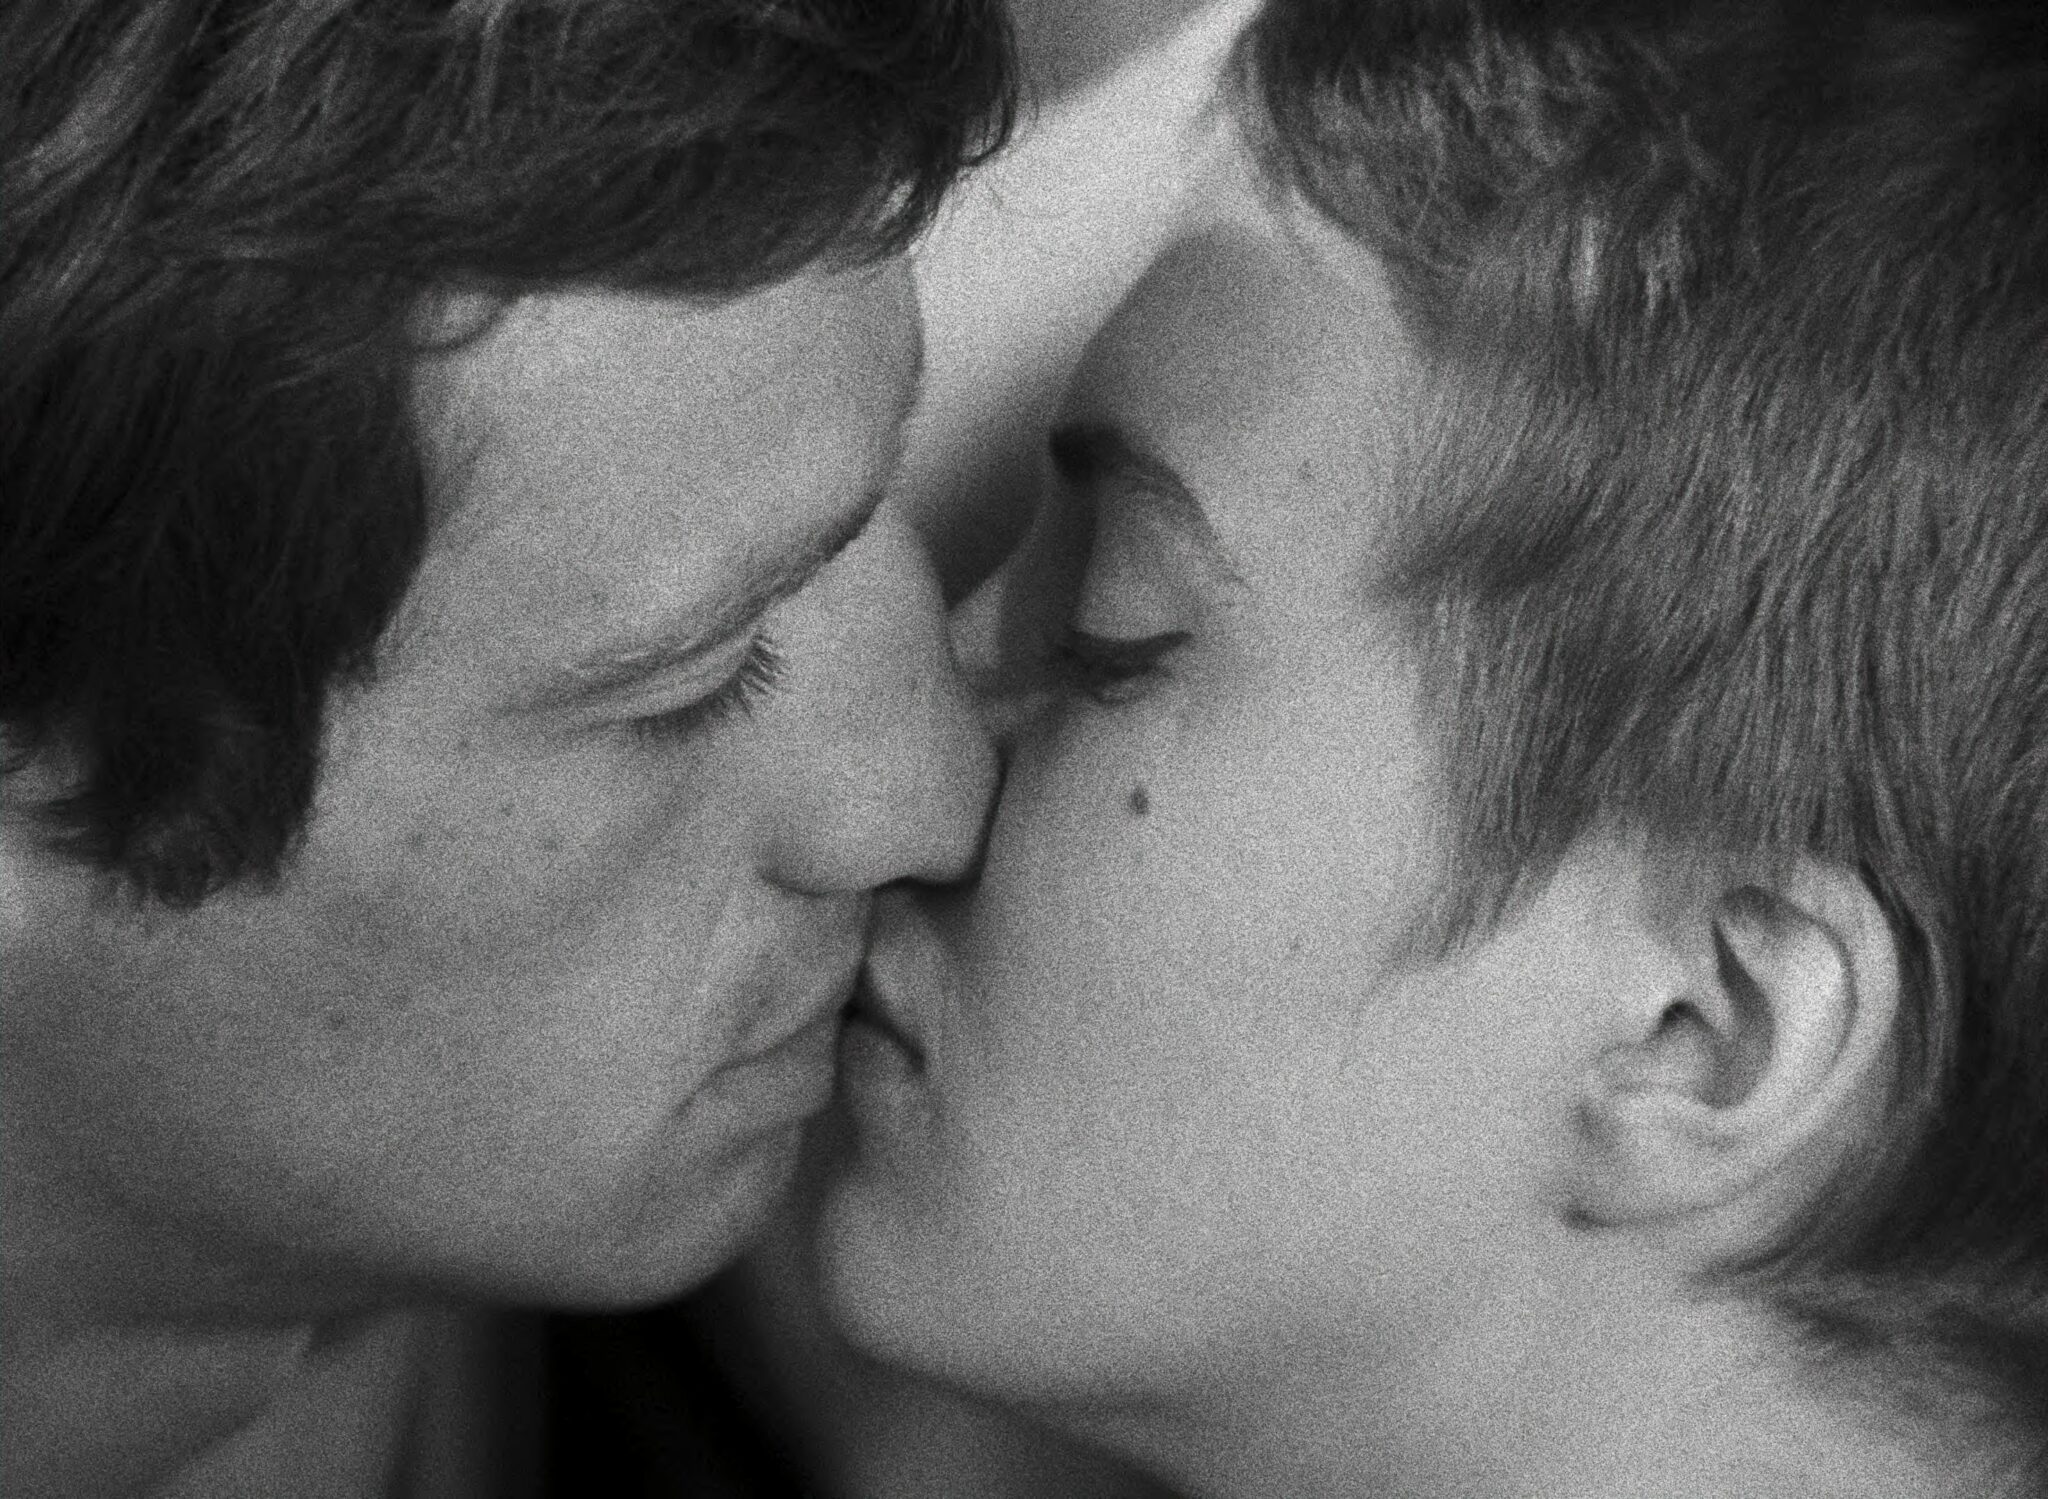 Das Filmpaar küsst sich leidenschaftlich in Außer Atem.